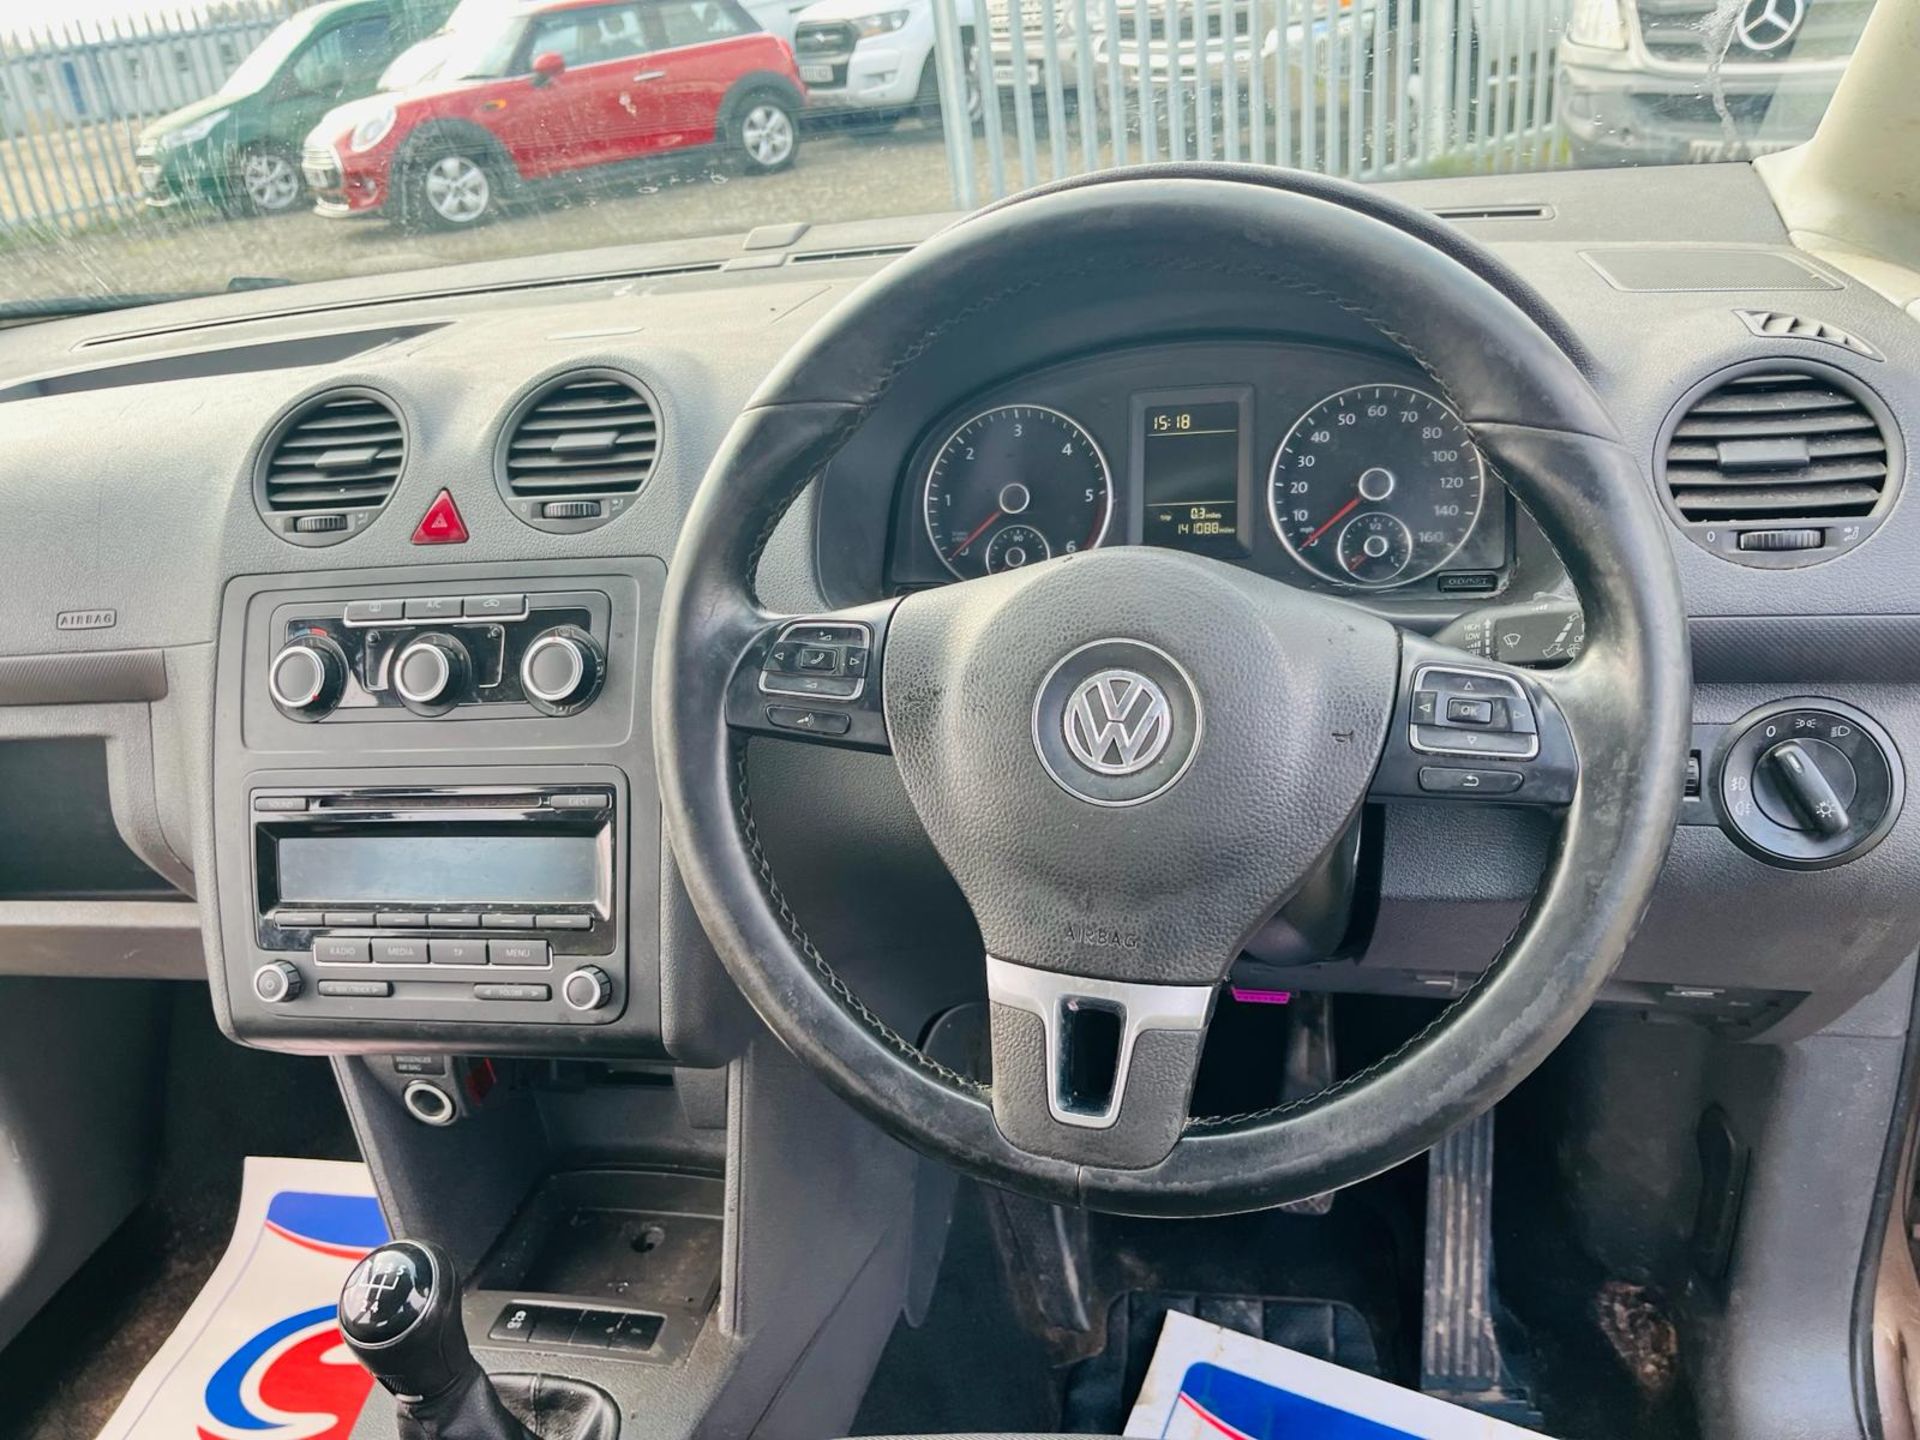 Volkswagen Caddy Maxi C20 1.6 TDI LIFE 120 2014 '14 Reg' -A/C -No Vat - A/C - Image 24 of 33